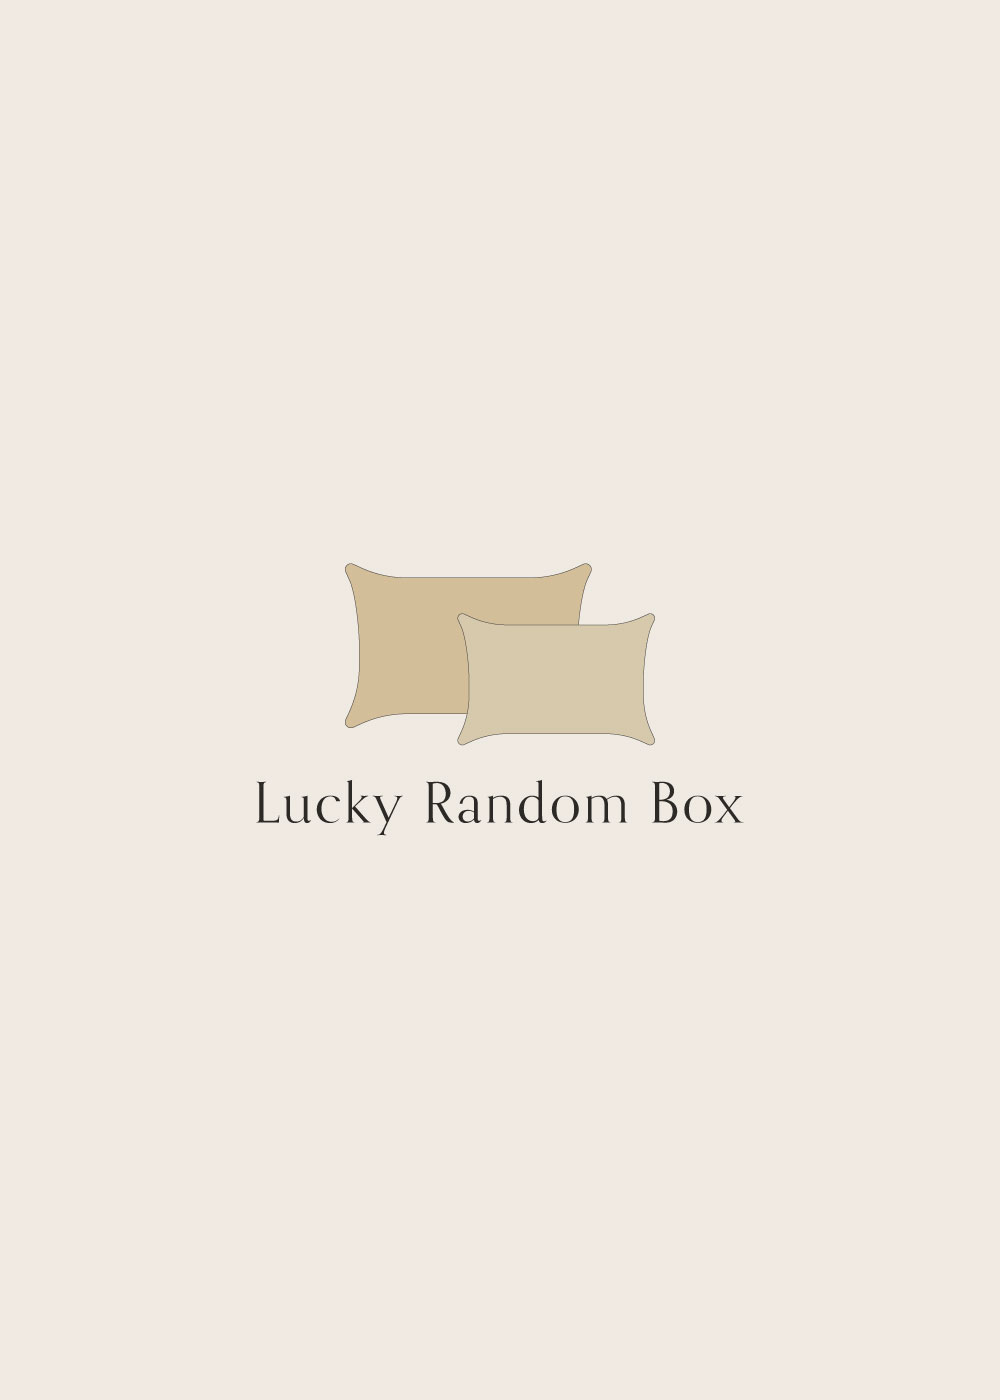 lucky random box